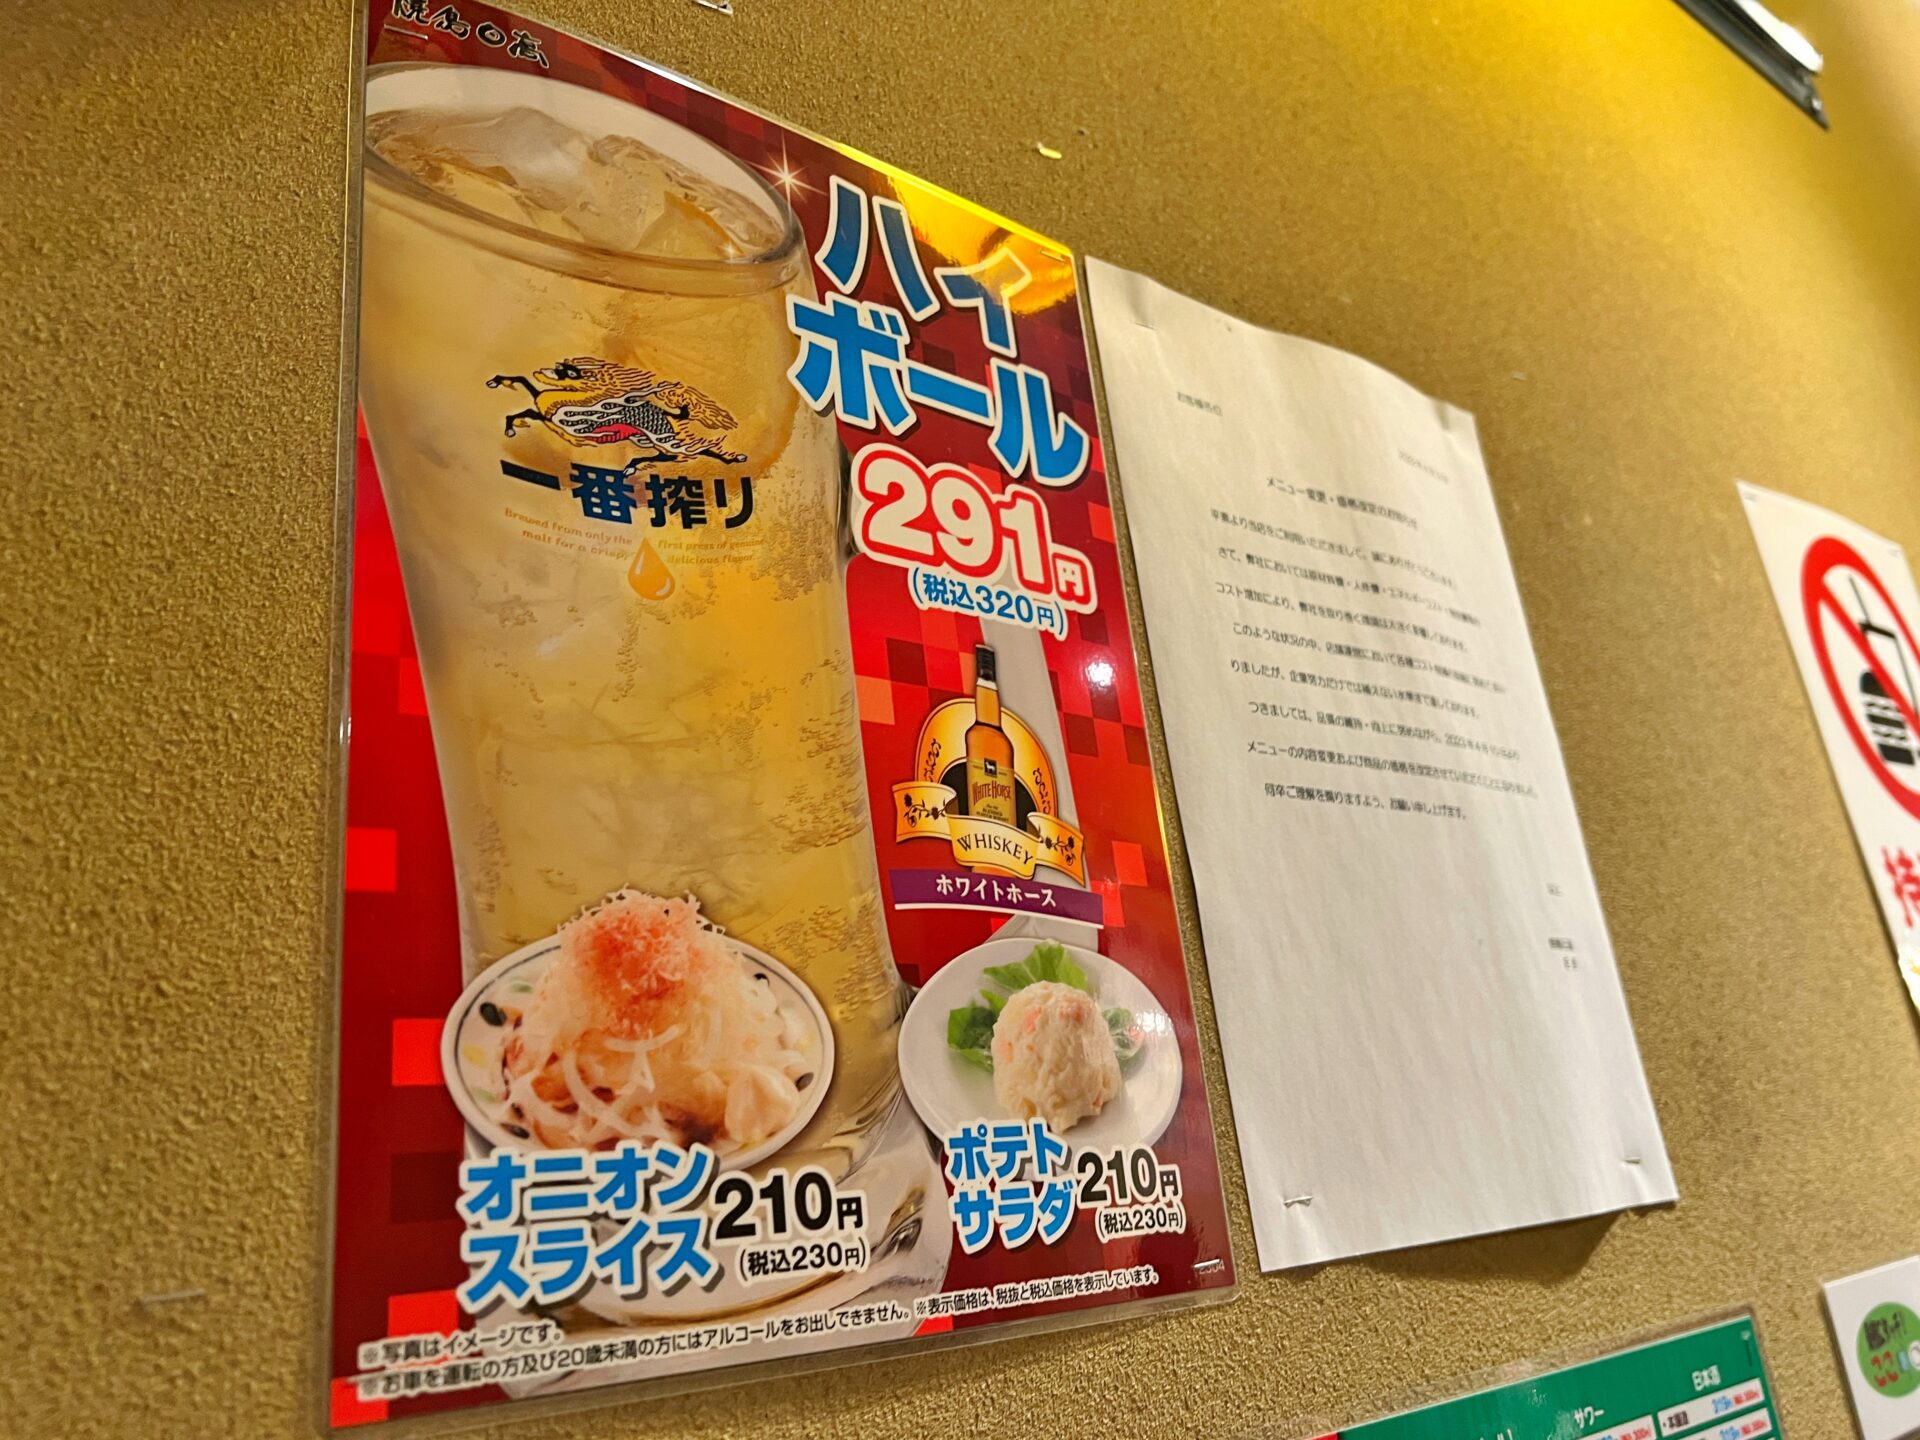 神コスパ「焼鳥日高 朝霞台店」変わったペンで注文できる爆安居酒屋で食べまくり